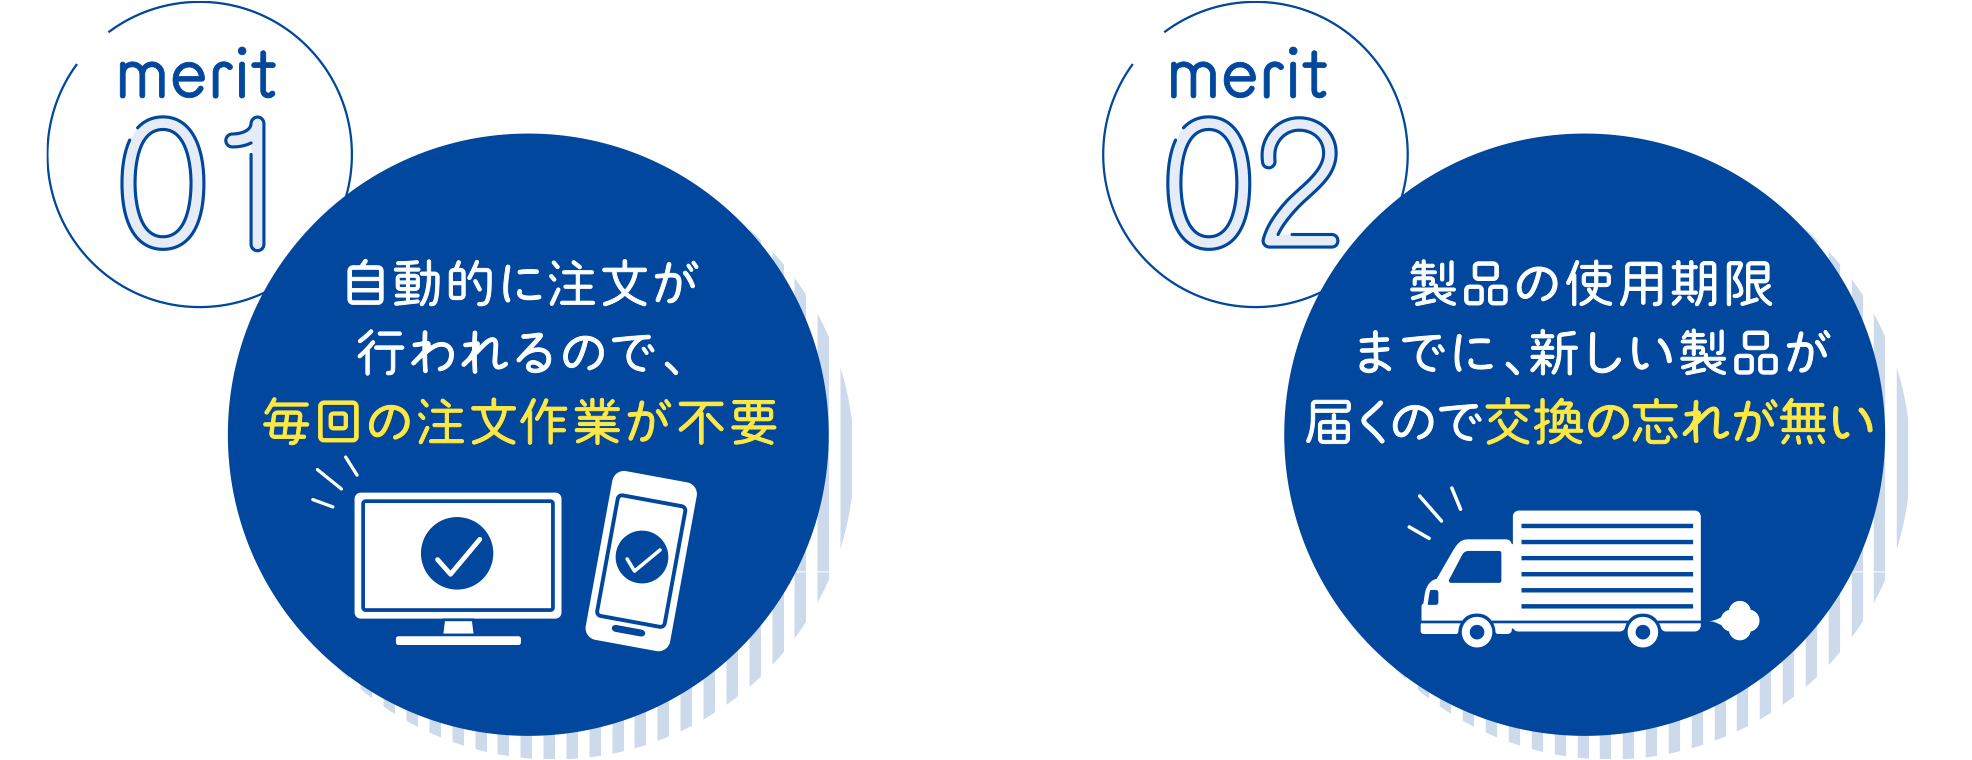 merit01 自動的に注文が行われるので、毎回の注文作業が不要 merit02 製品の使用期限までに、新しい製品が届くので交換の忘れが無い merit03 定期購入申込者には、もれなくクレベリンステッカーがついてくる